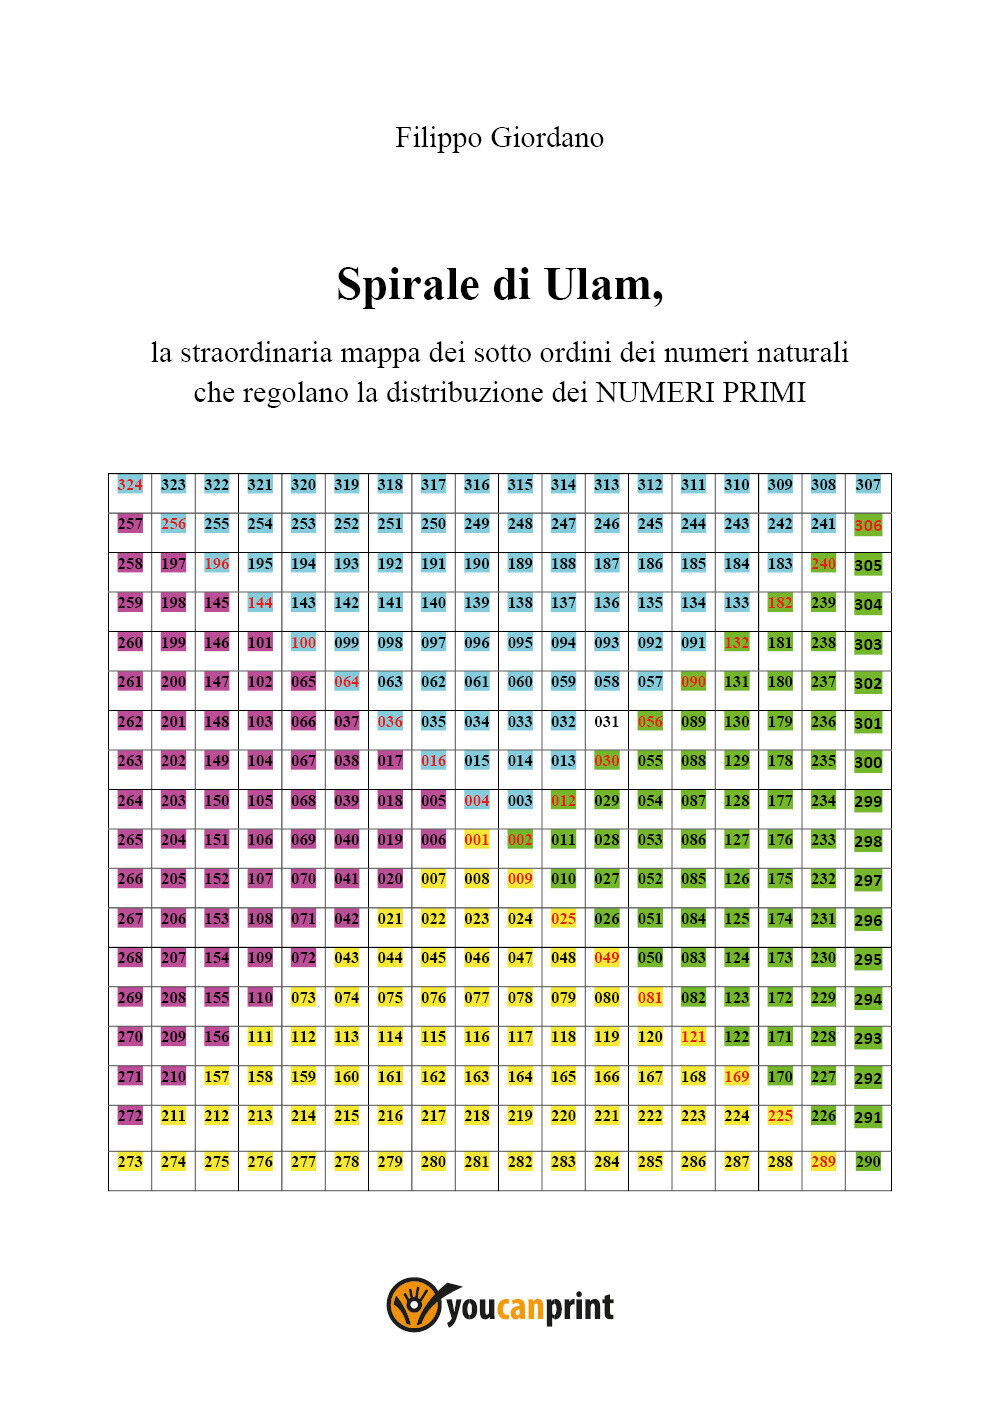 Spirale di Ulam, la straordinaria mappa dei sott?ordini dei numeri naturali che  libro usato